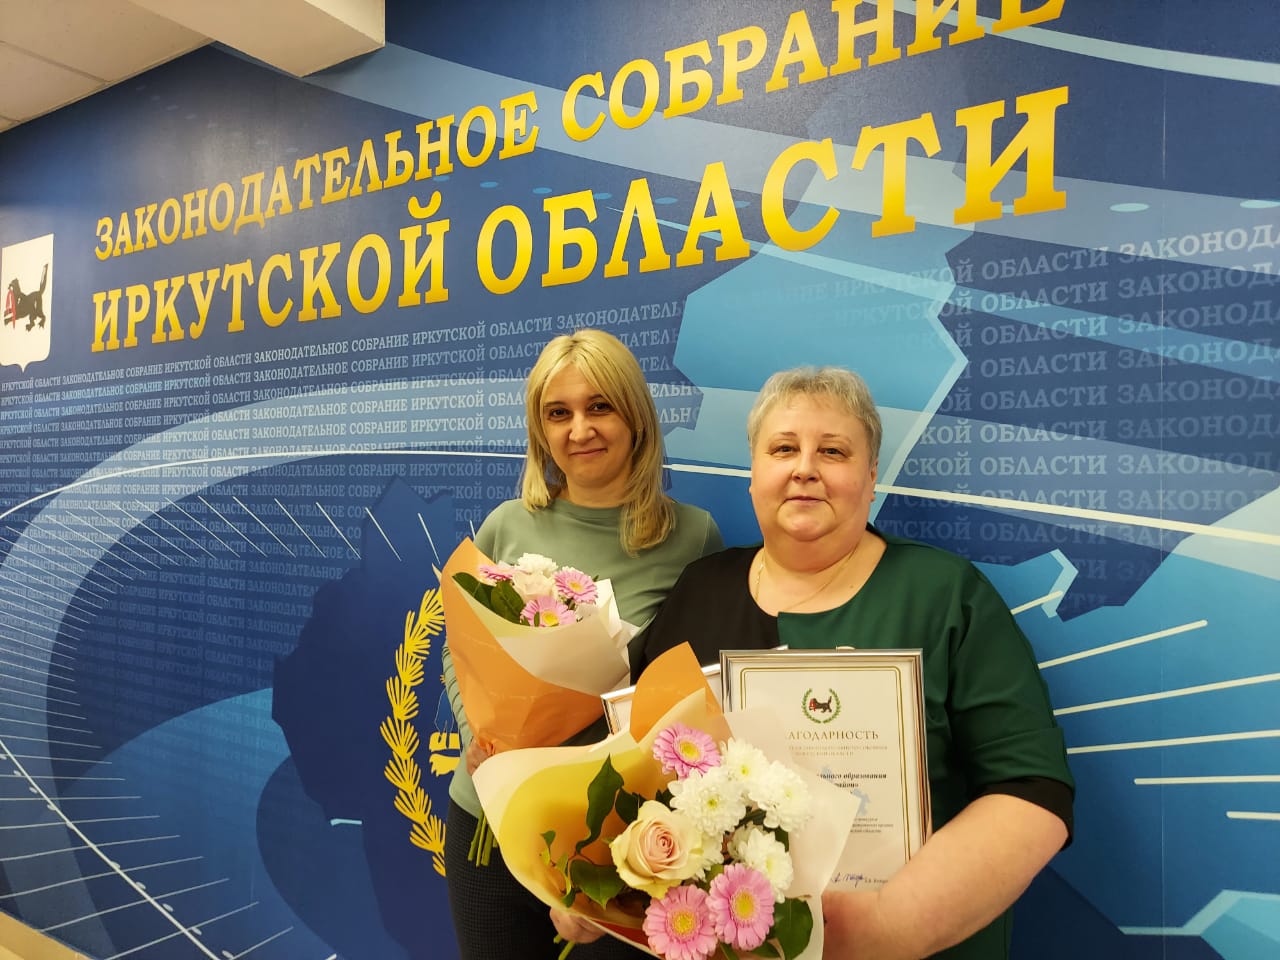 Дума Братского района признана лучшим представительным органом на областном уровне среди муниципальных районов